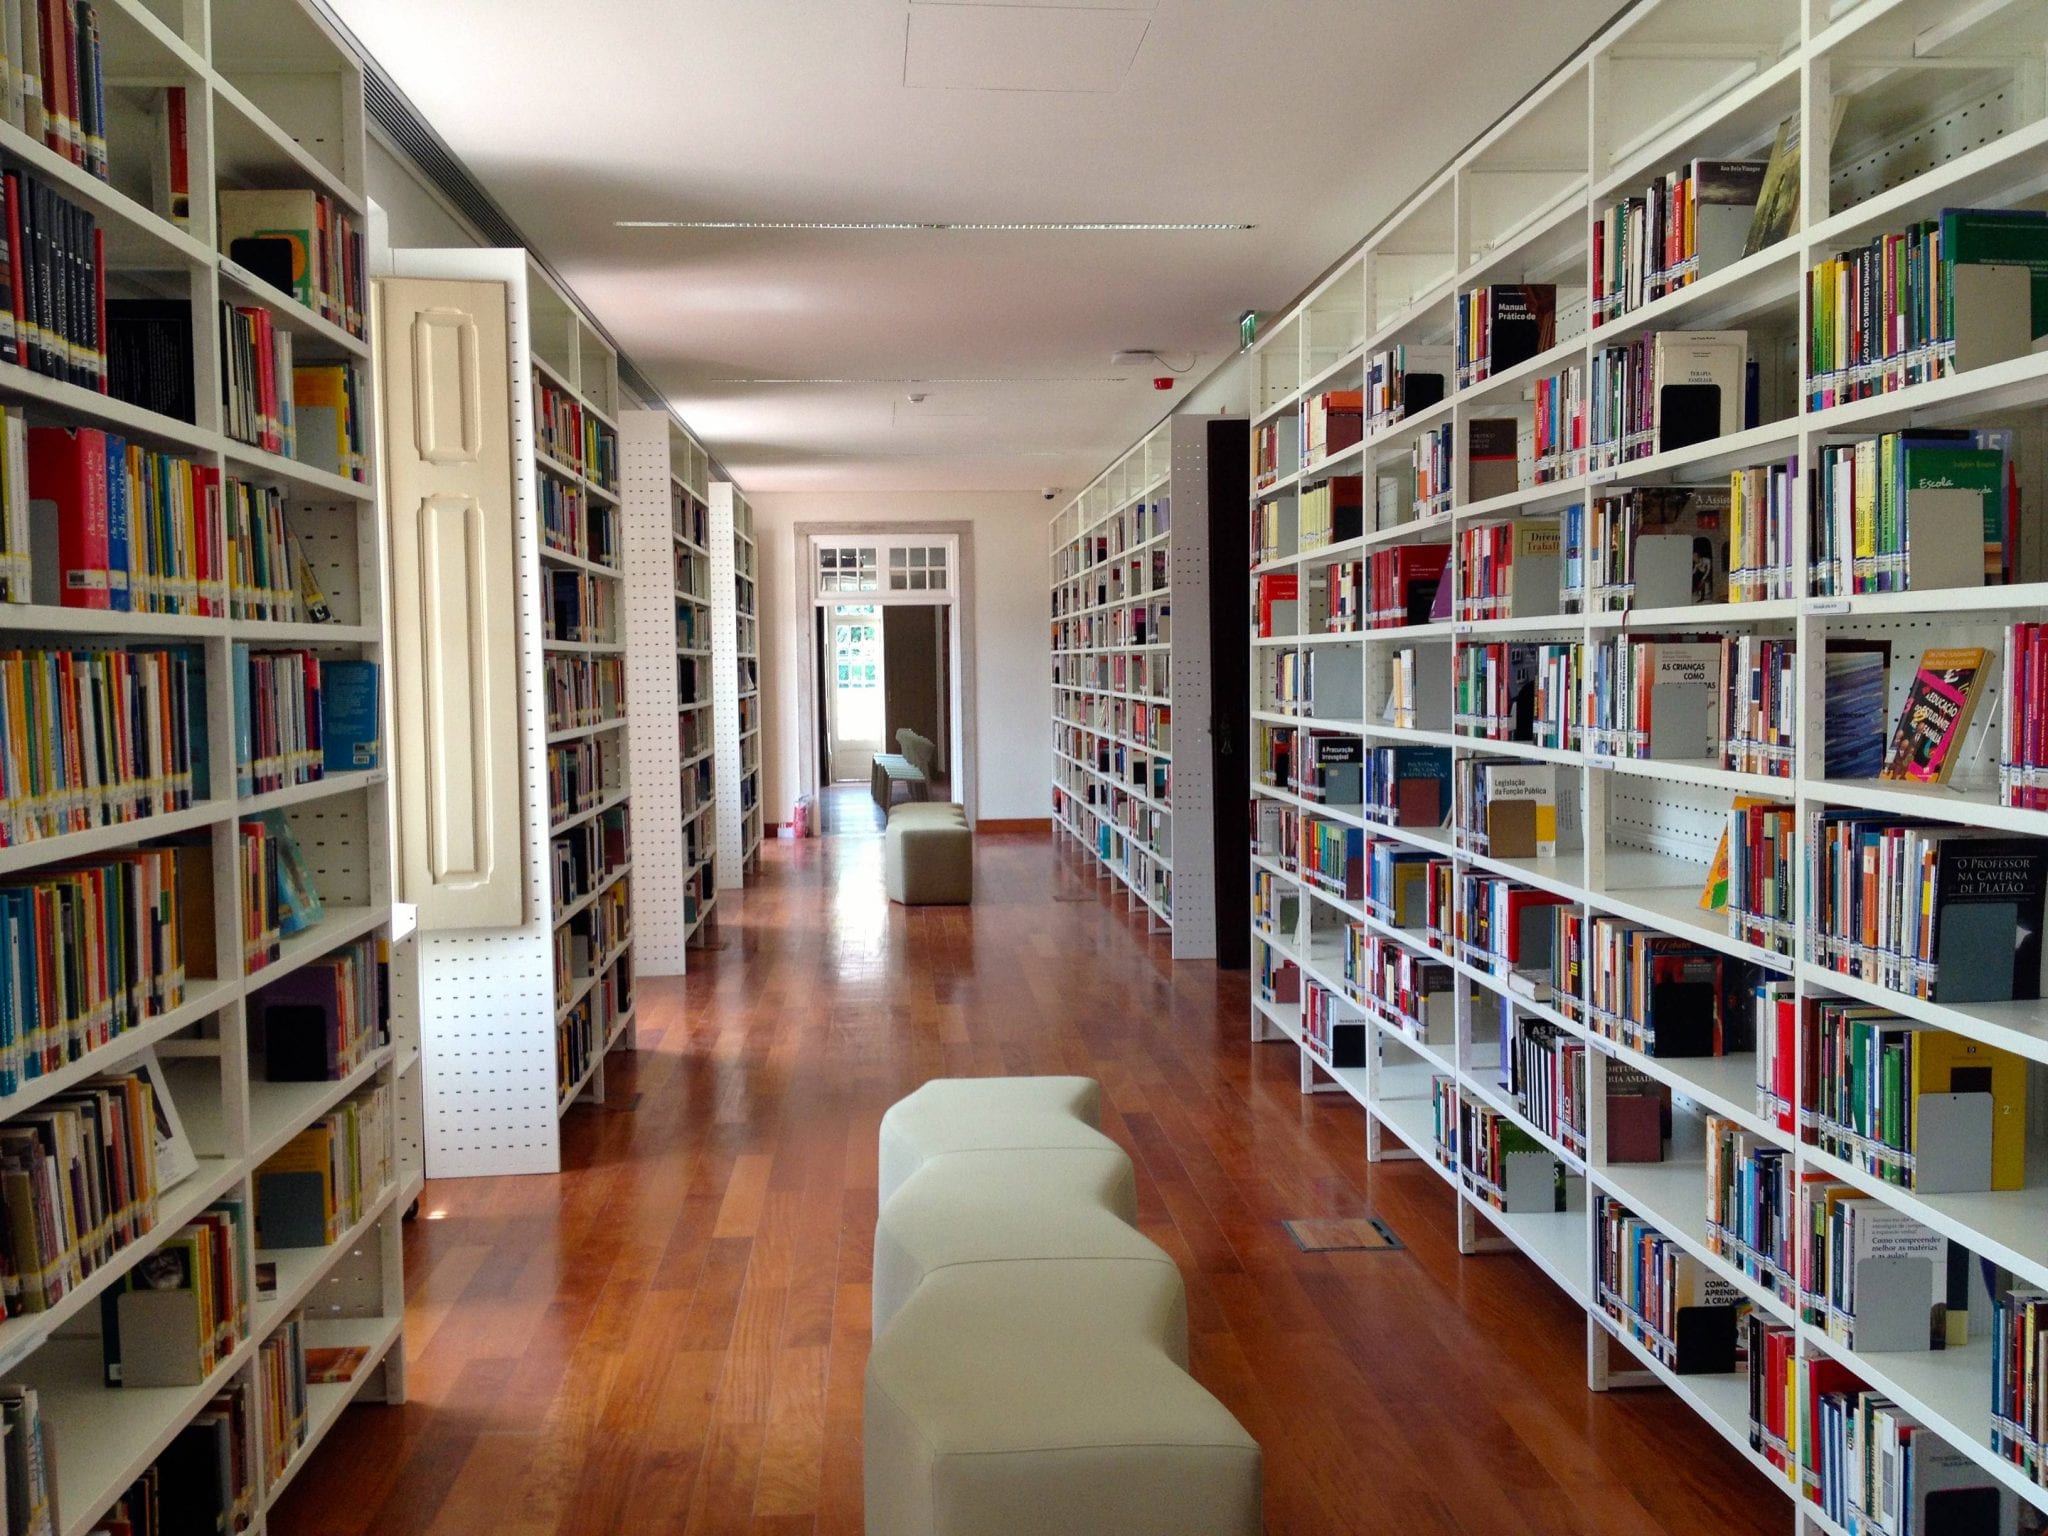 Apesar de planeada há anos, construção de uma biblioteca municipal “a sério” em Benfica continua sem data definida